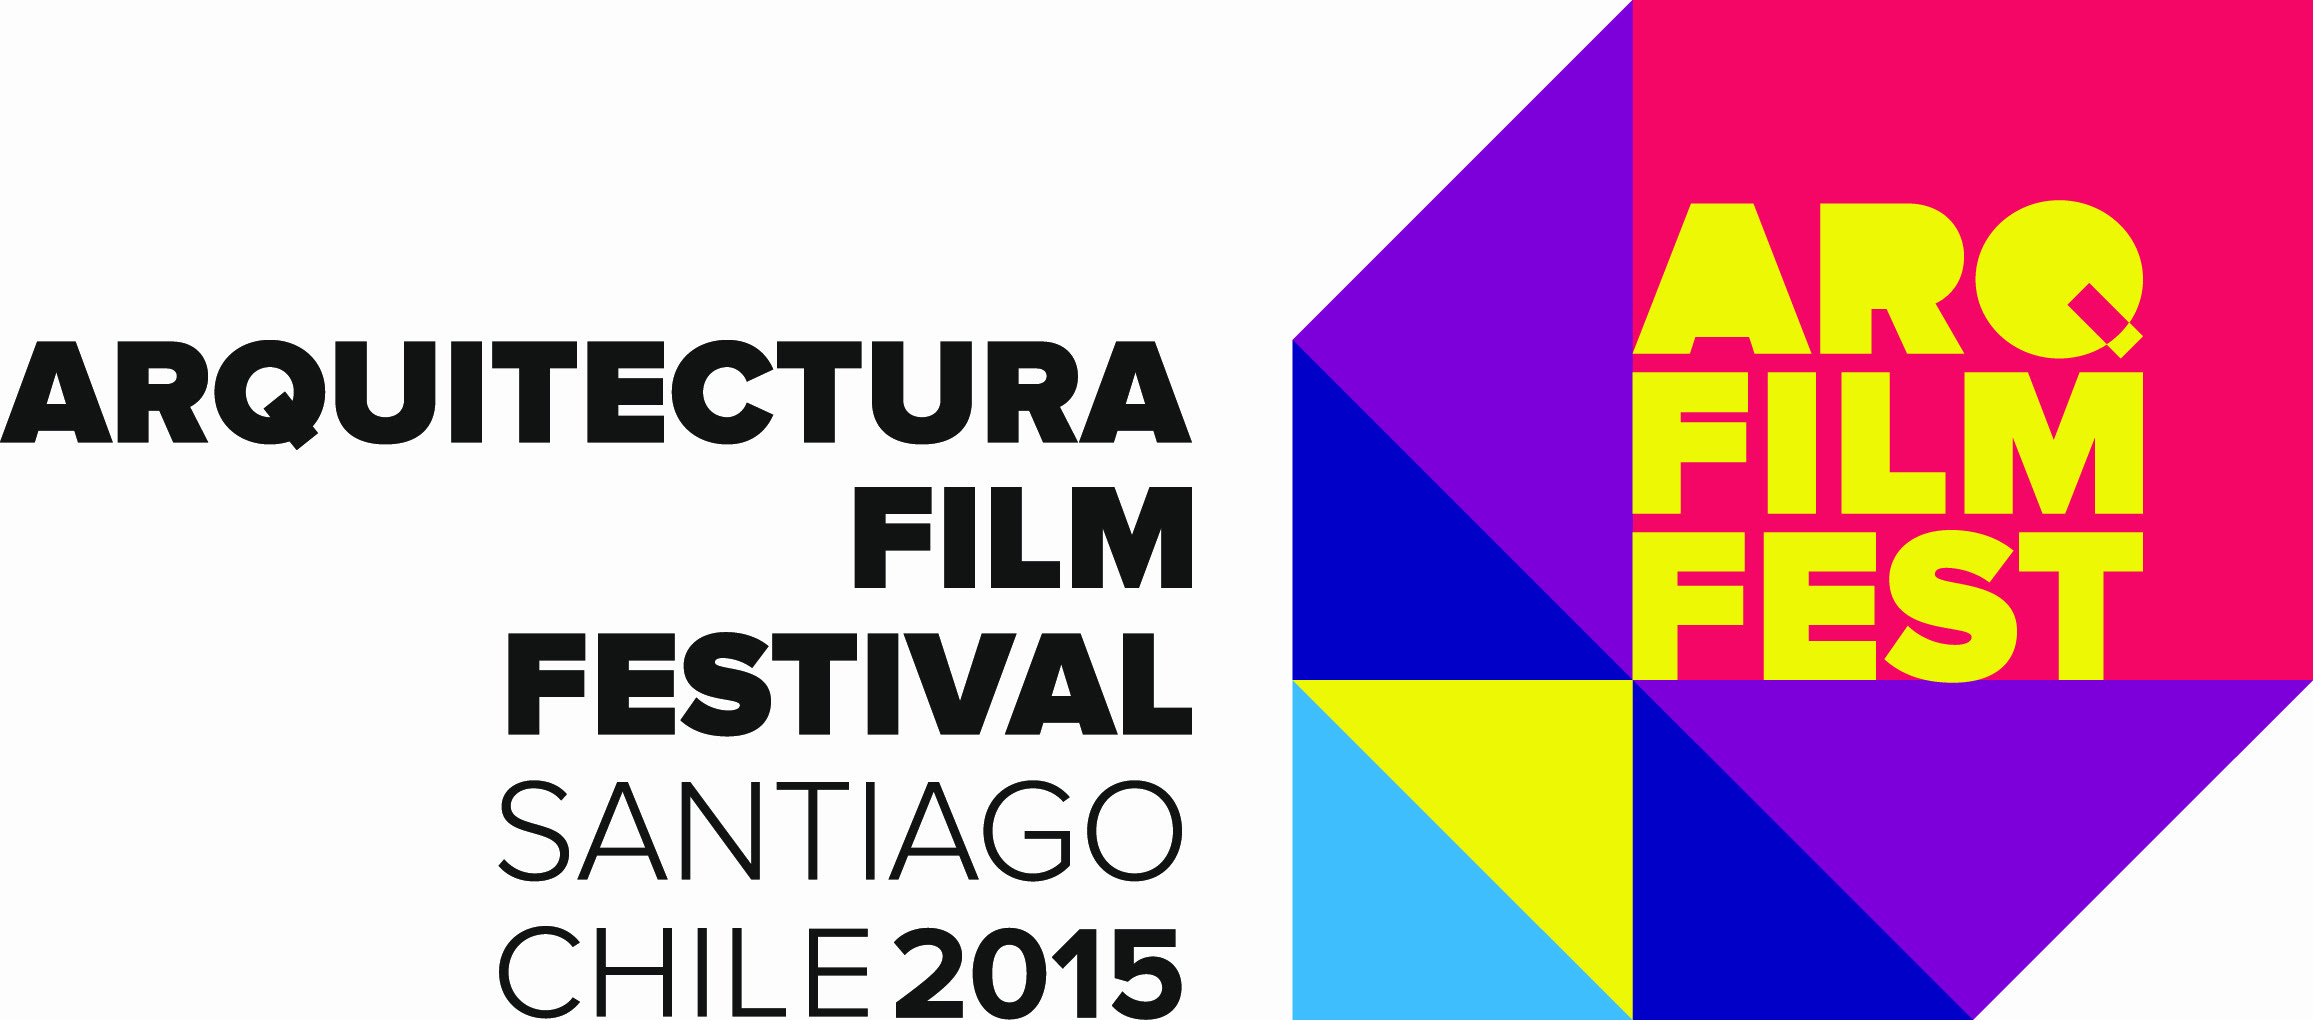 You are currently viewing Noches de cine y arquitectura en @matucana100